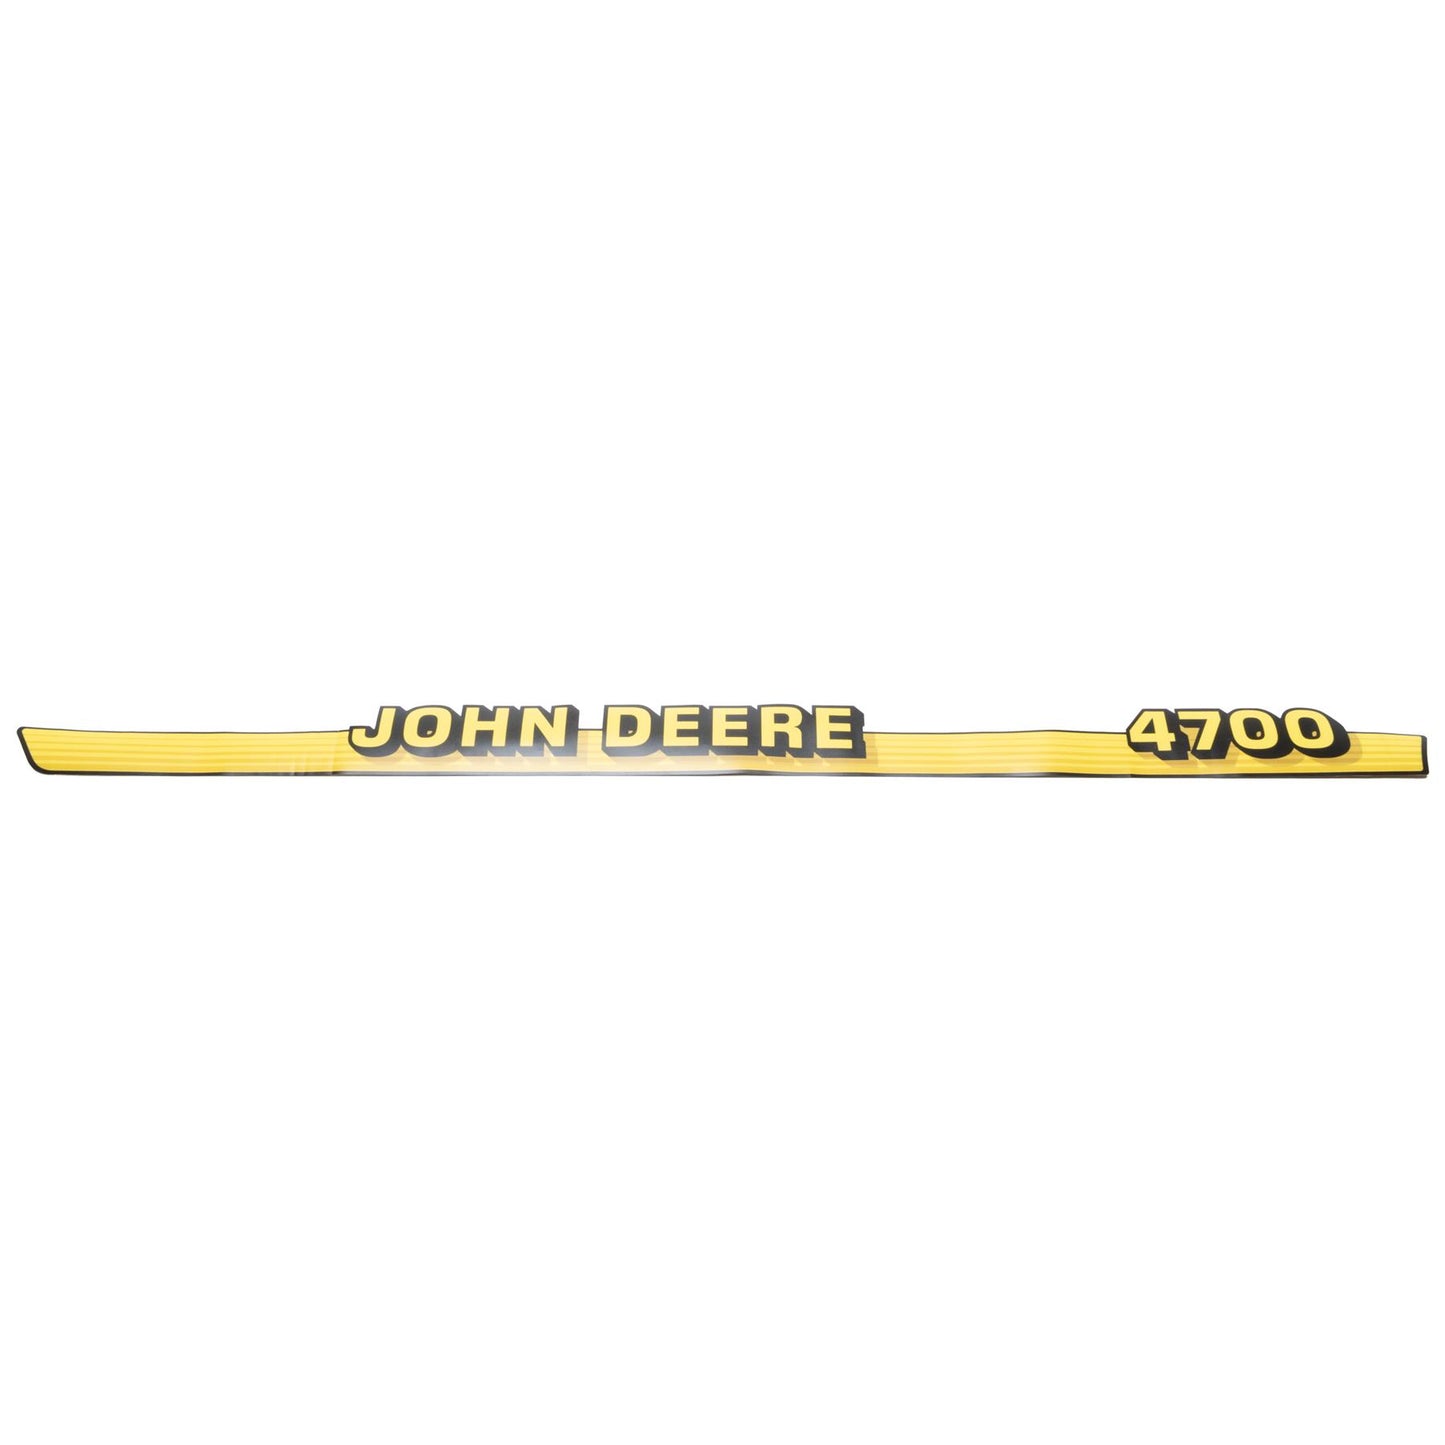 John Deere Hood Trim Decal Set - 4700 - BJD161